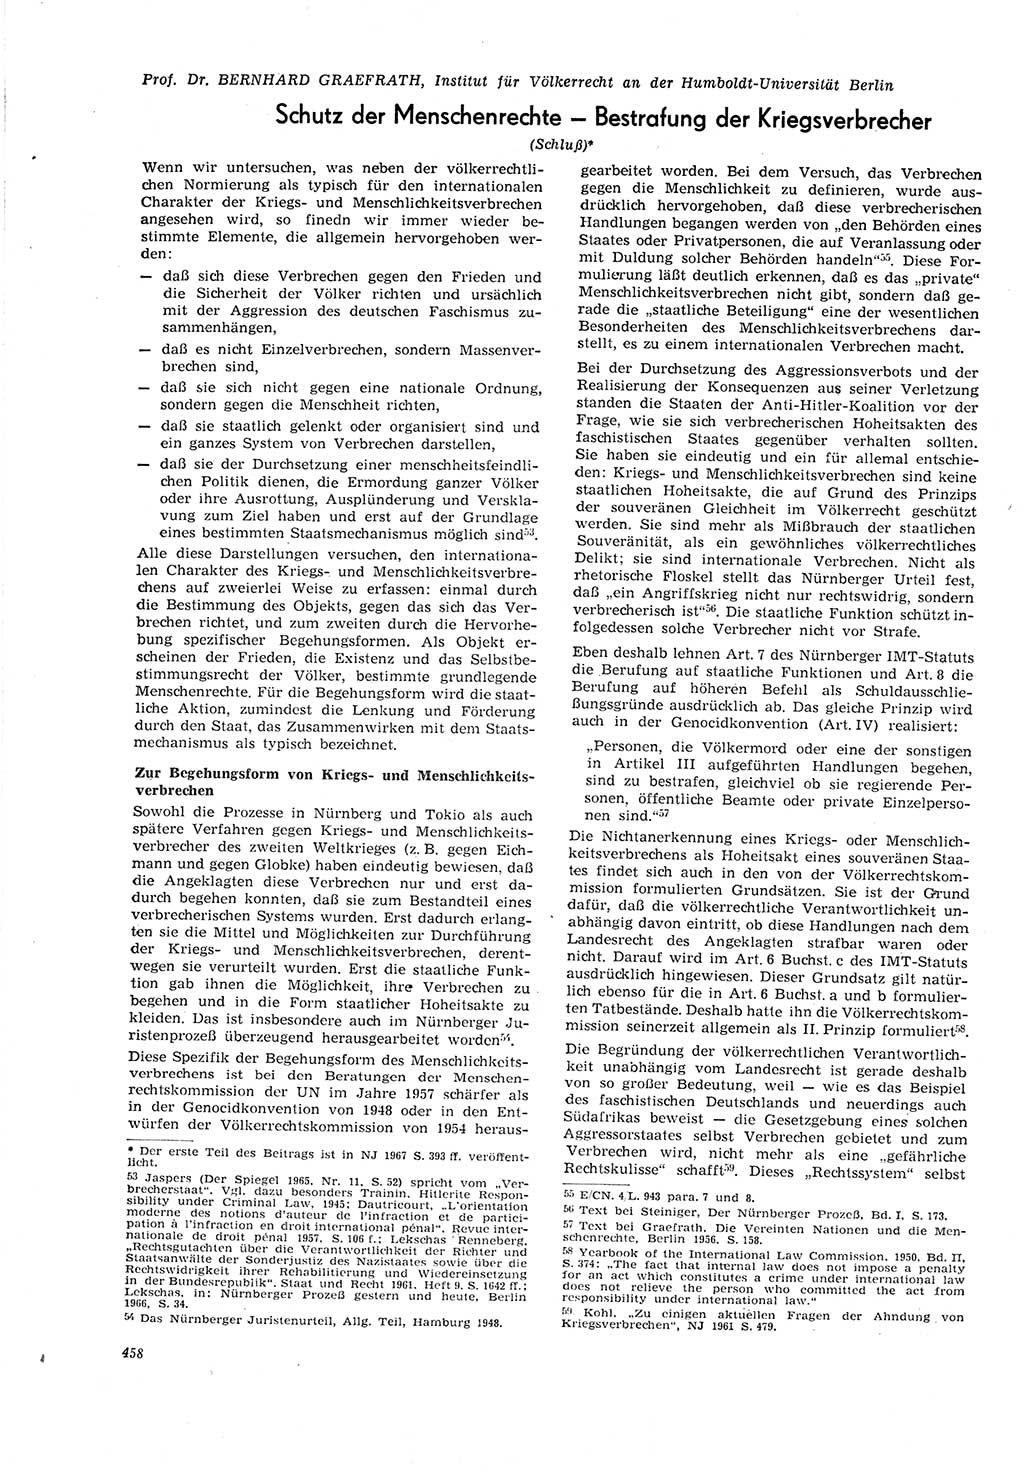 Neue Justiz (NJ), Zeitschrift für Recht und Rechtswissenschaft [Deutsche Demokratische Republik (DDR)], 21. Jahrgang 1967, Seite 458 (NJ DDR 1967, S. 458)